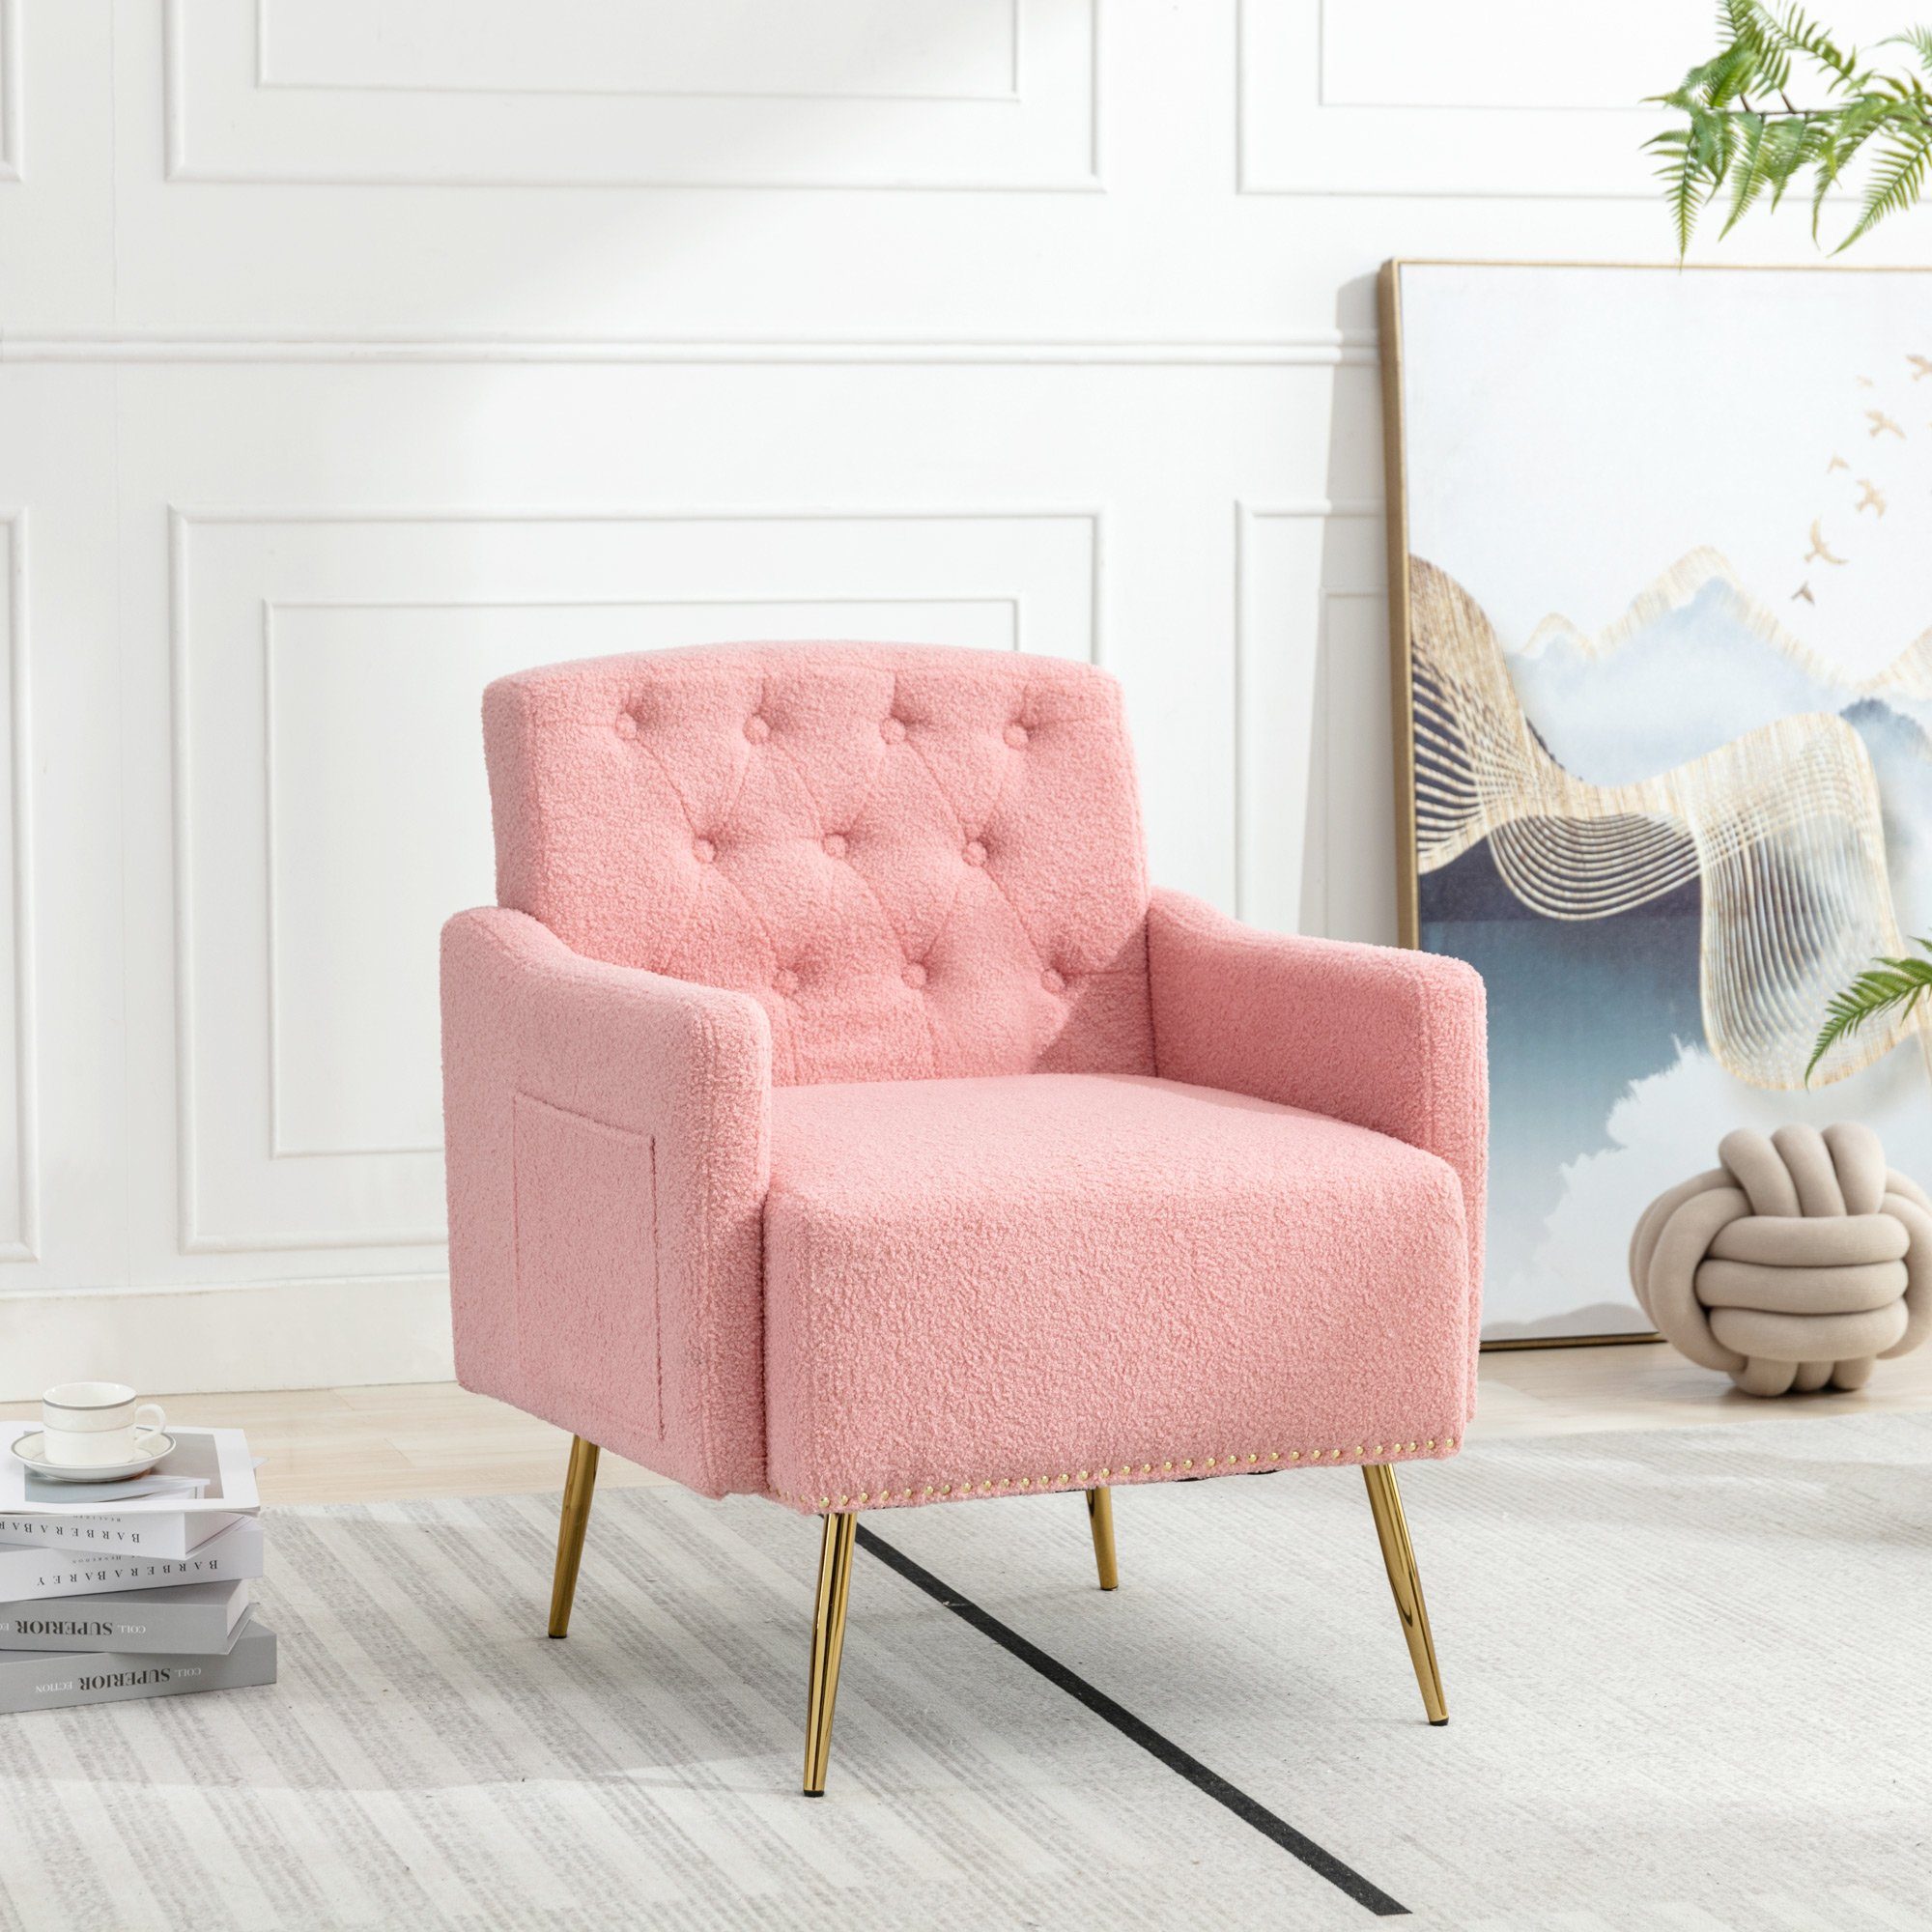 OKWISH Sessel Relaxsessel, Relaxstuhl, goldene Metallbeine, Teddy-Samt-Stuhl (Wohnzimmerstuhl, bequemer Sessel, geeignet zum Lesen oder Entspannen, Wohnzimmerstuhl, bequemer Sessel), mit Reißverschluss-Design rosa